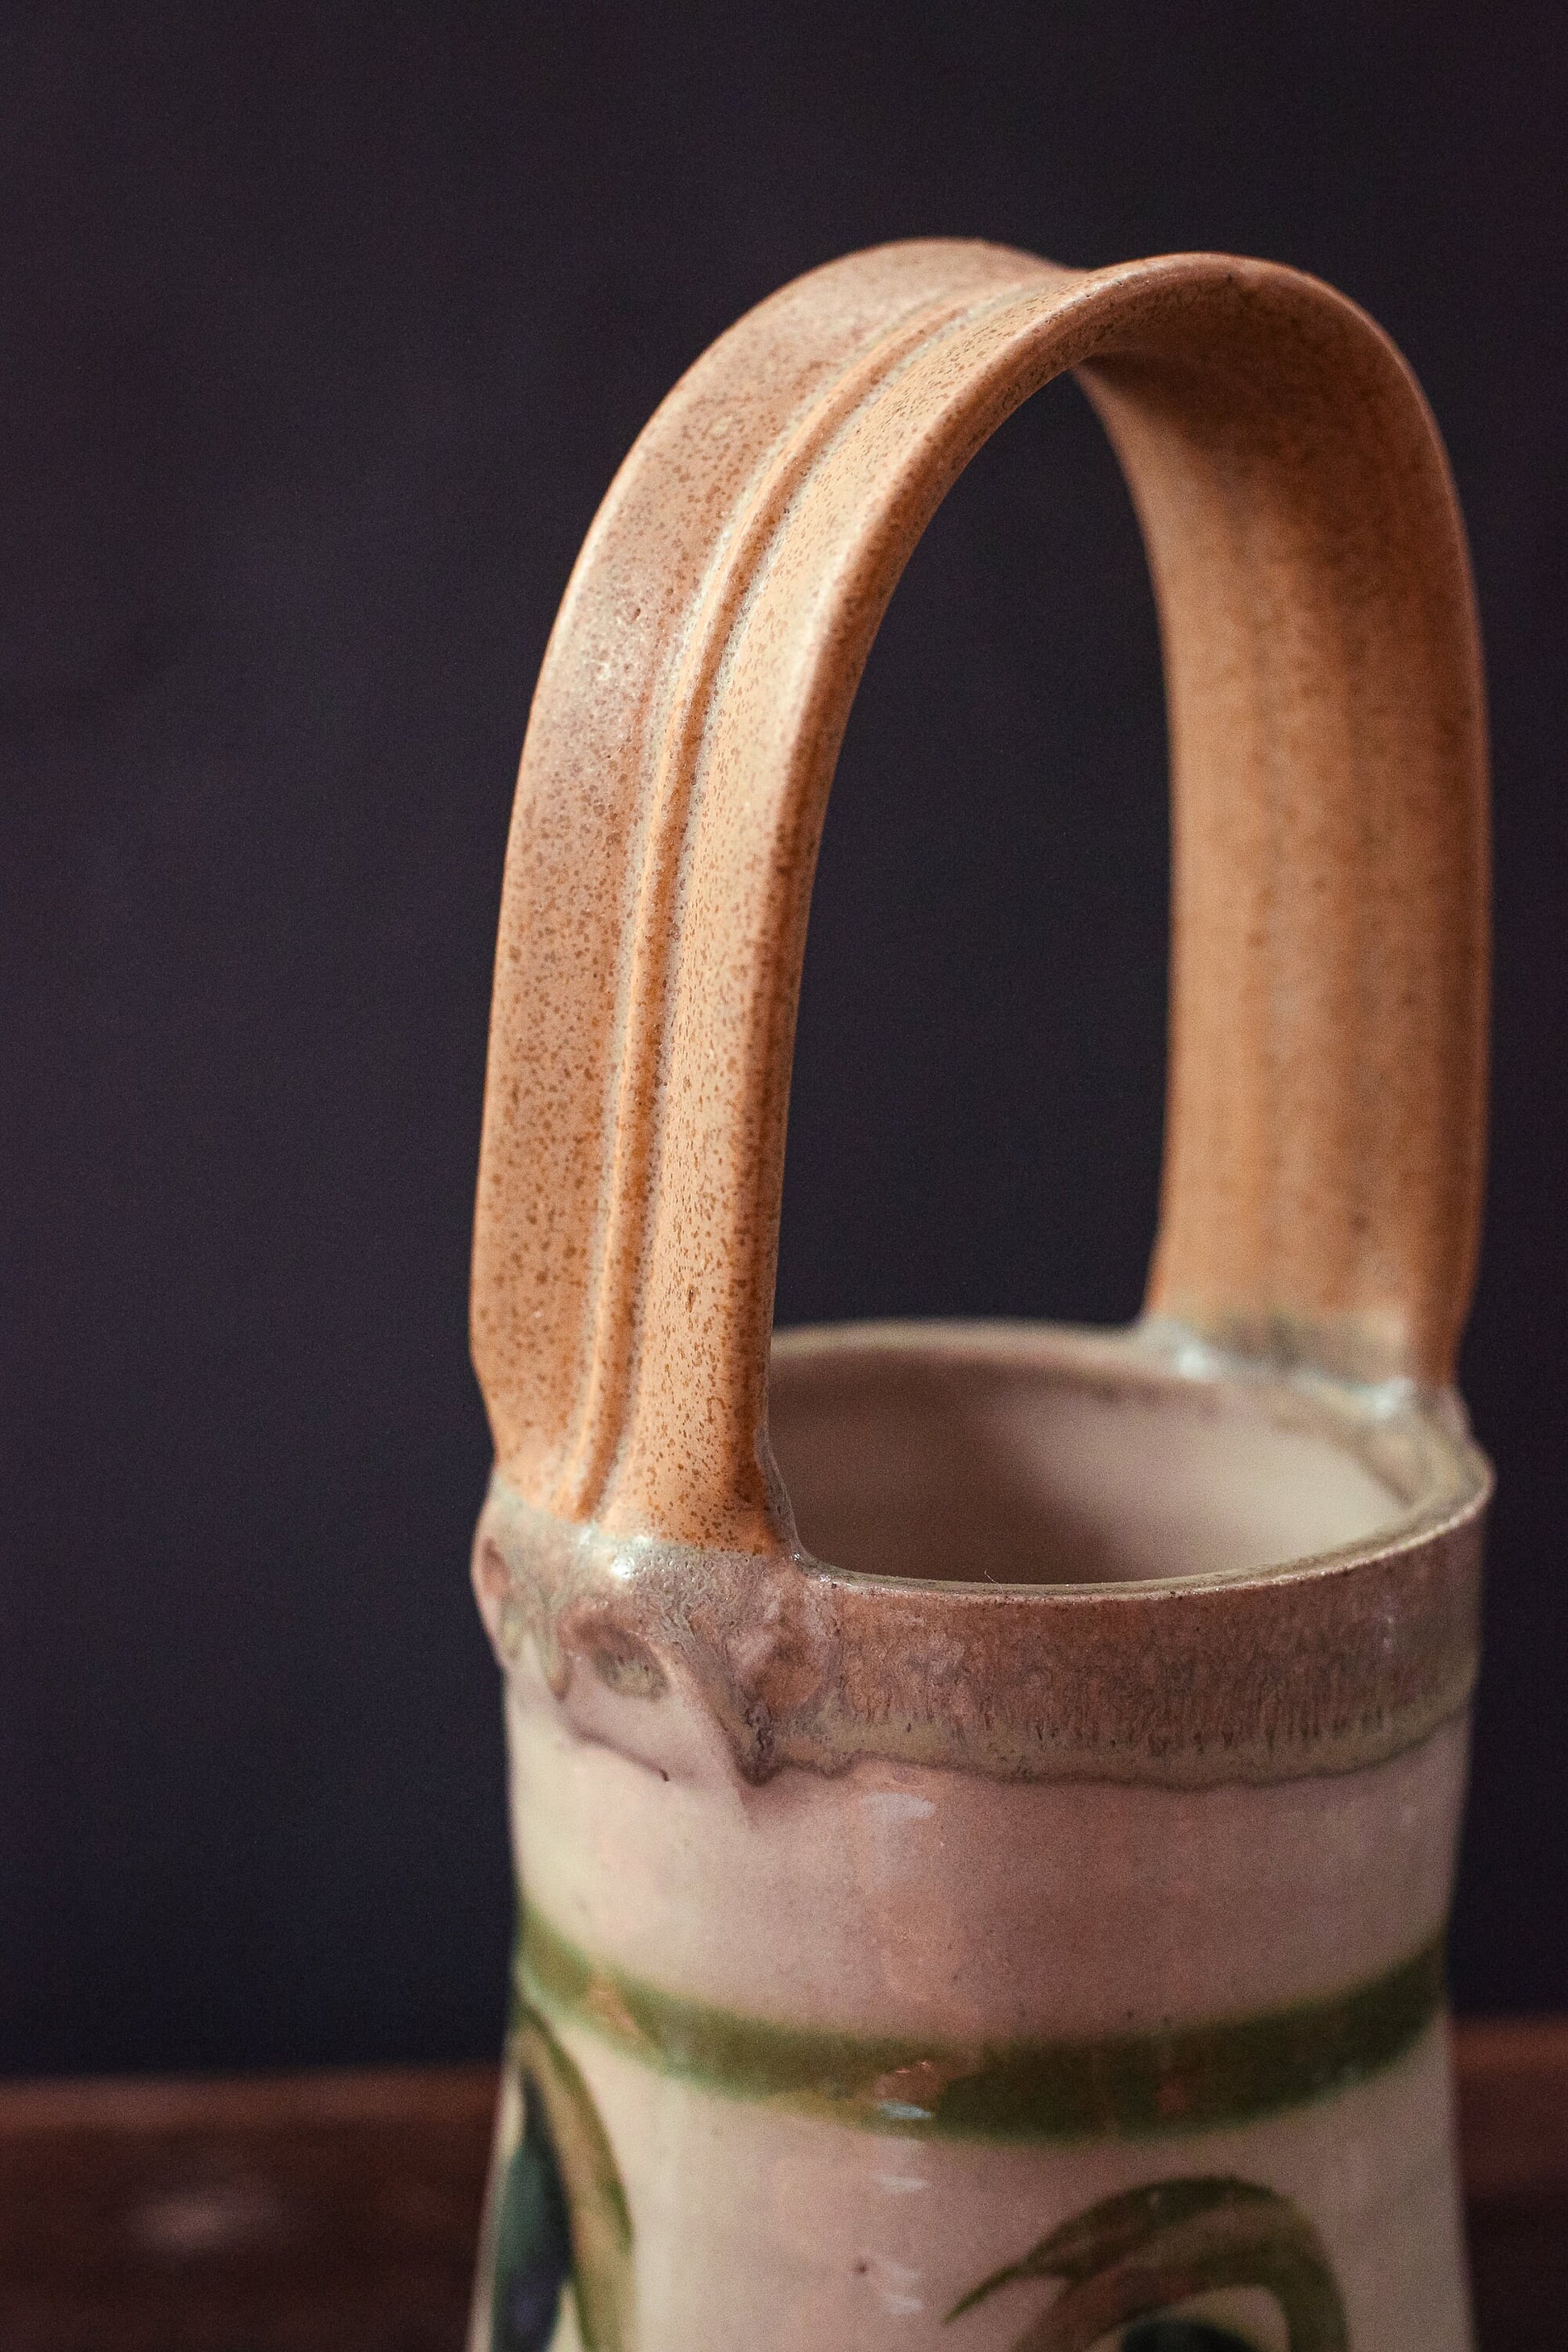 Ecru and Olive Glazed Ceramic Basket Vase - Vintage Studio Pottery Signed RB